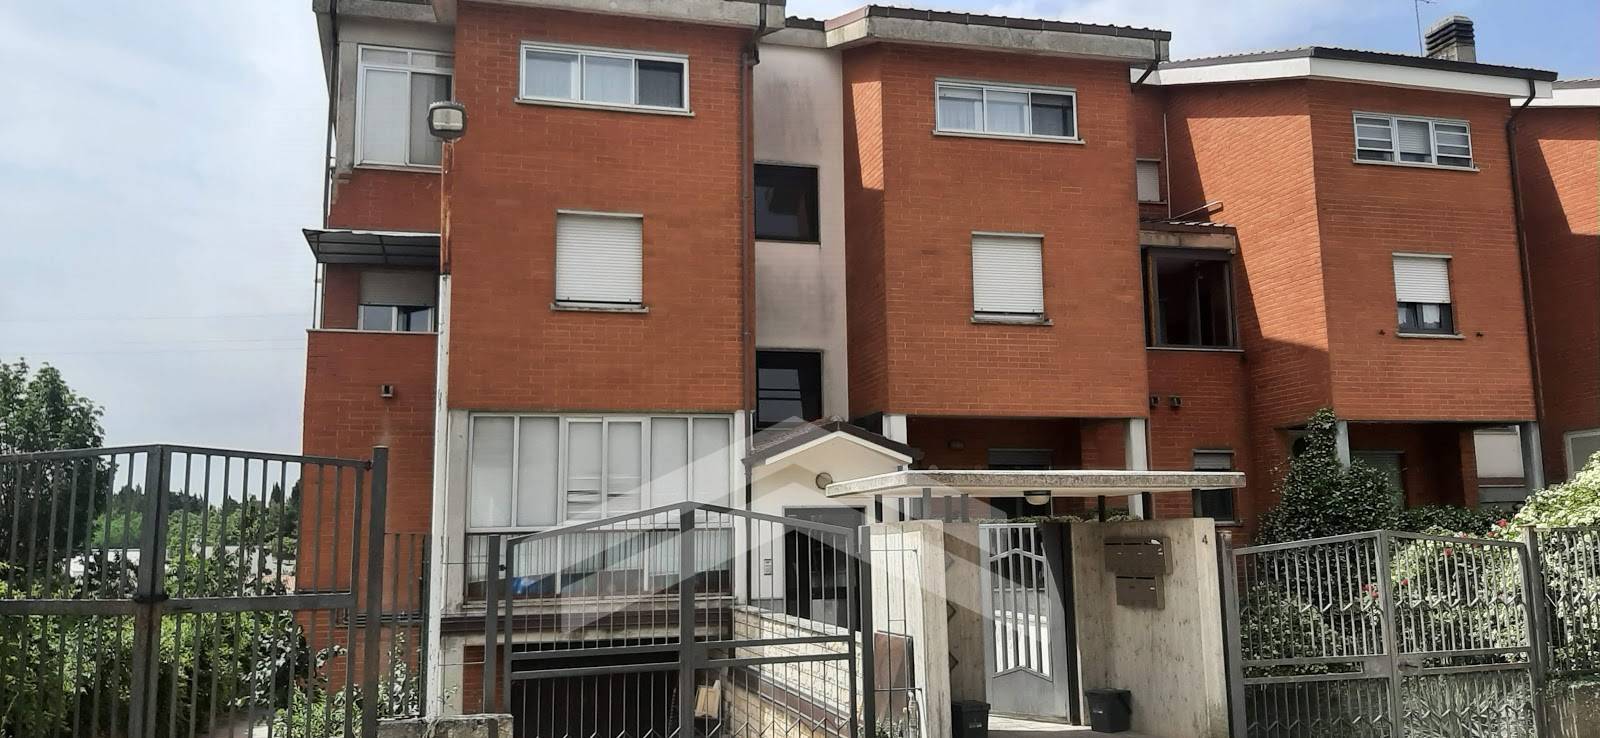 Appartamento in vendita a Ferrazzano, 5 locali, prezzo € 139.000 | PortaleAgenzieImmobiliari.it